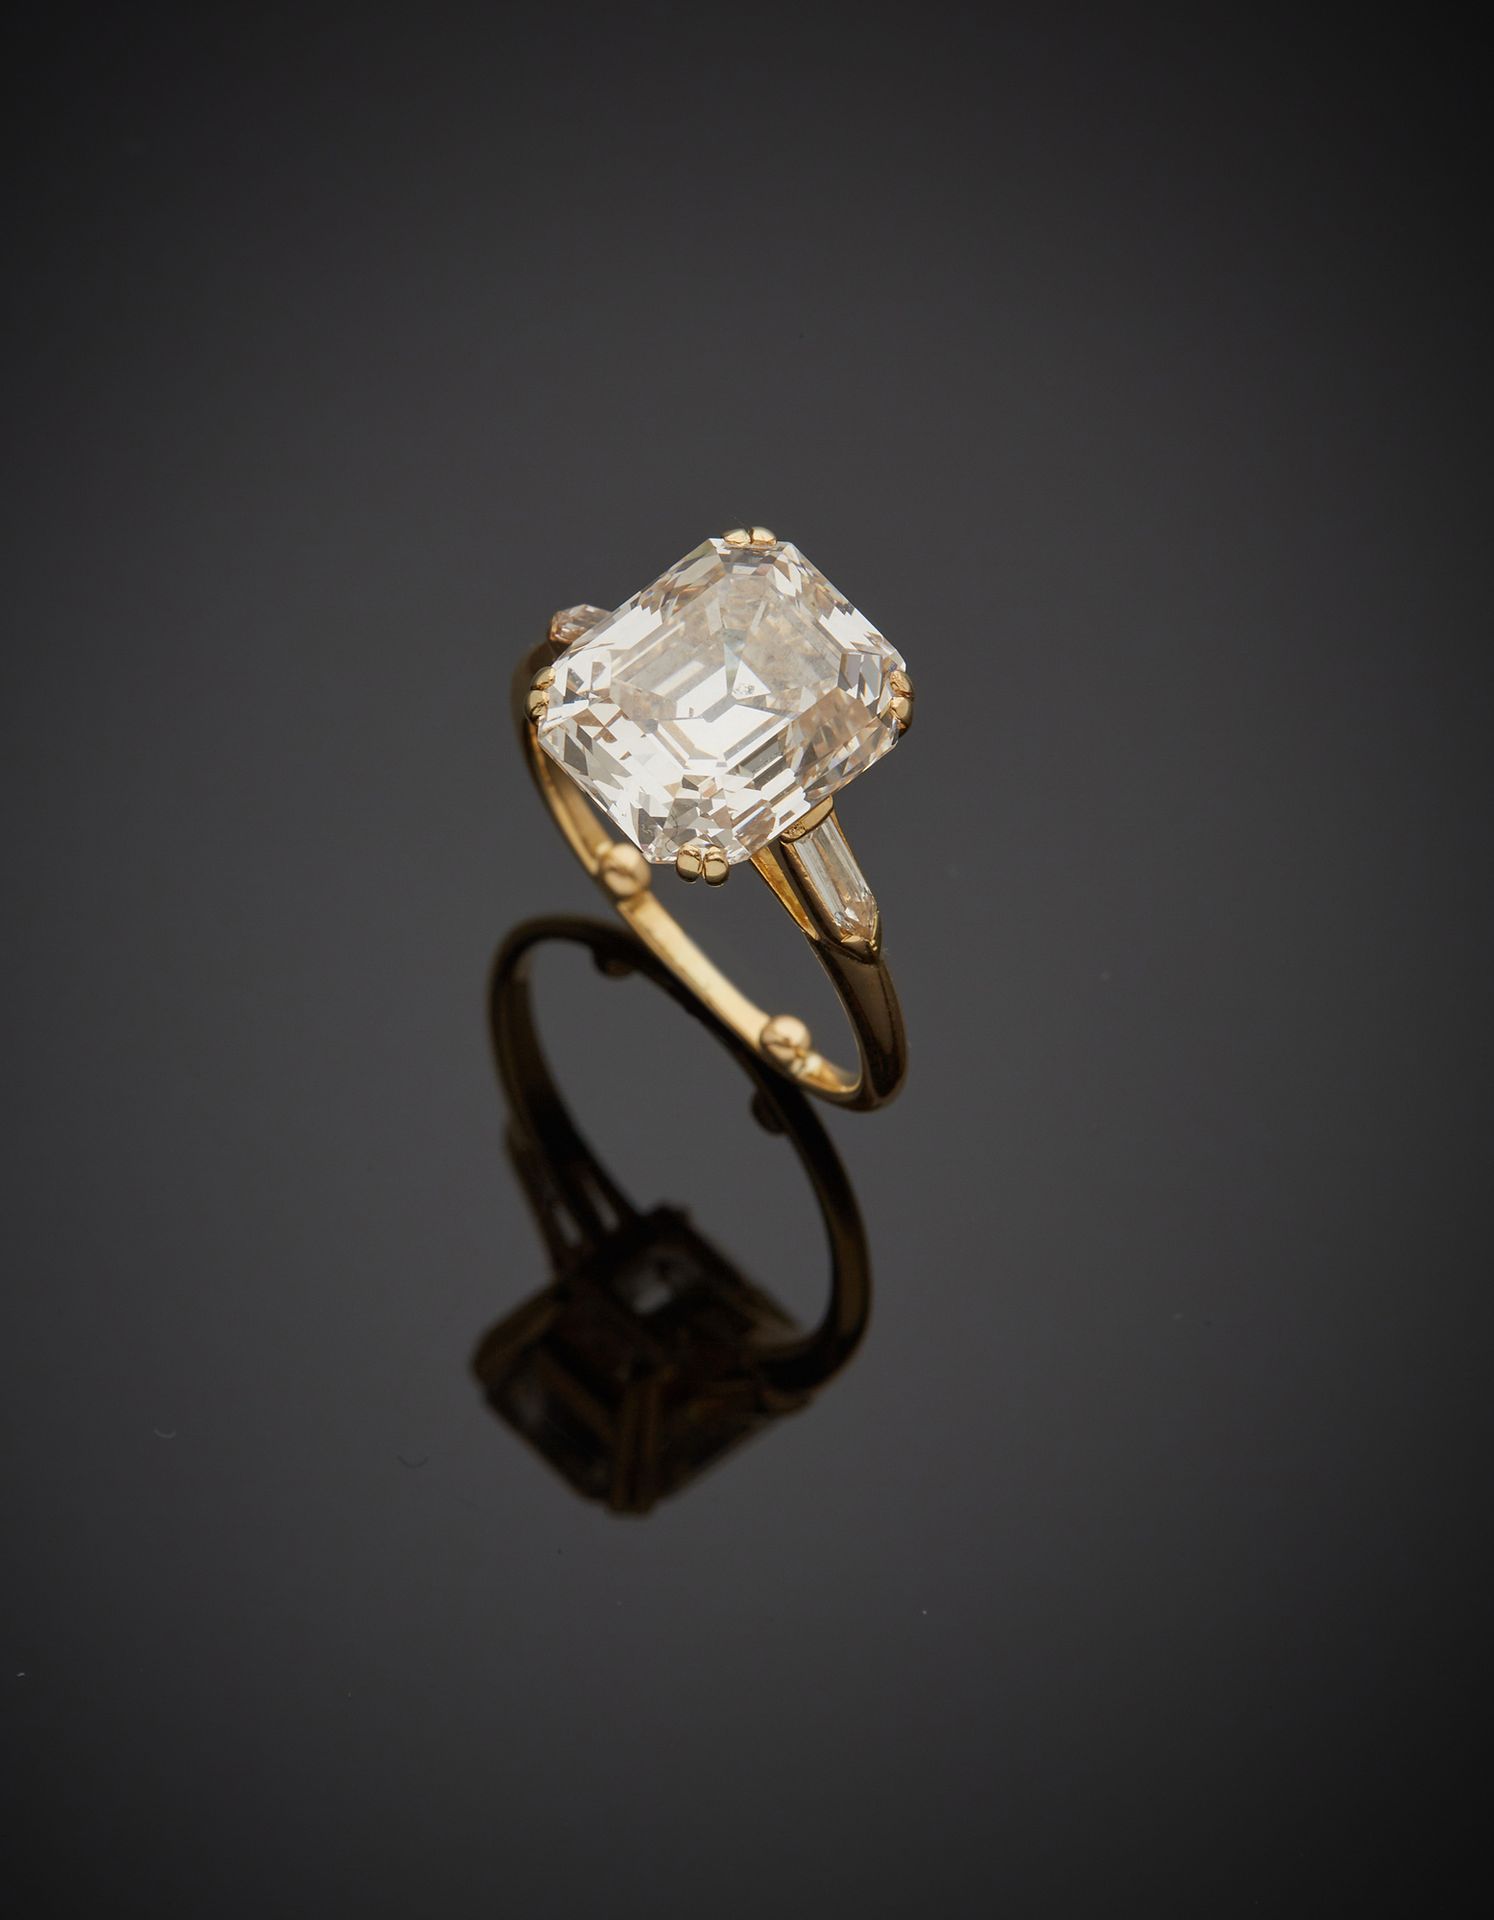 Null 一枚18K黄金750‰的戒指，镶嵌着一颗长方形的阶梯式切割钻石，肩部的长方形切割钻石两端都是尖头。

带球的手指尺寸49 毛重4.20克

法国宝石学&hellip;